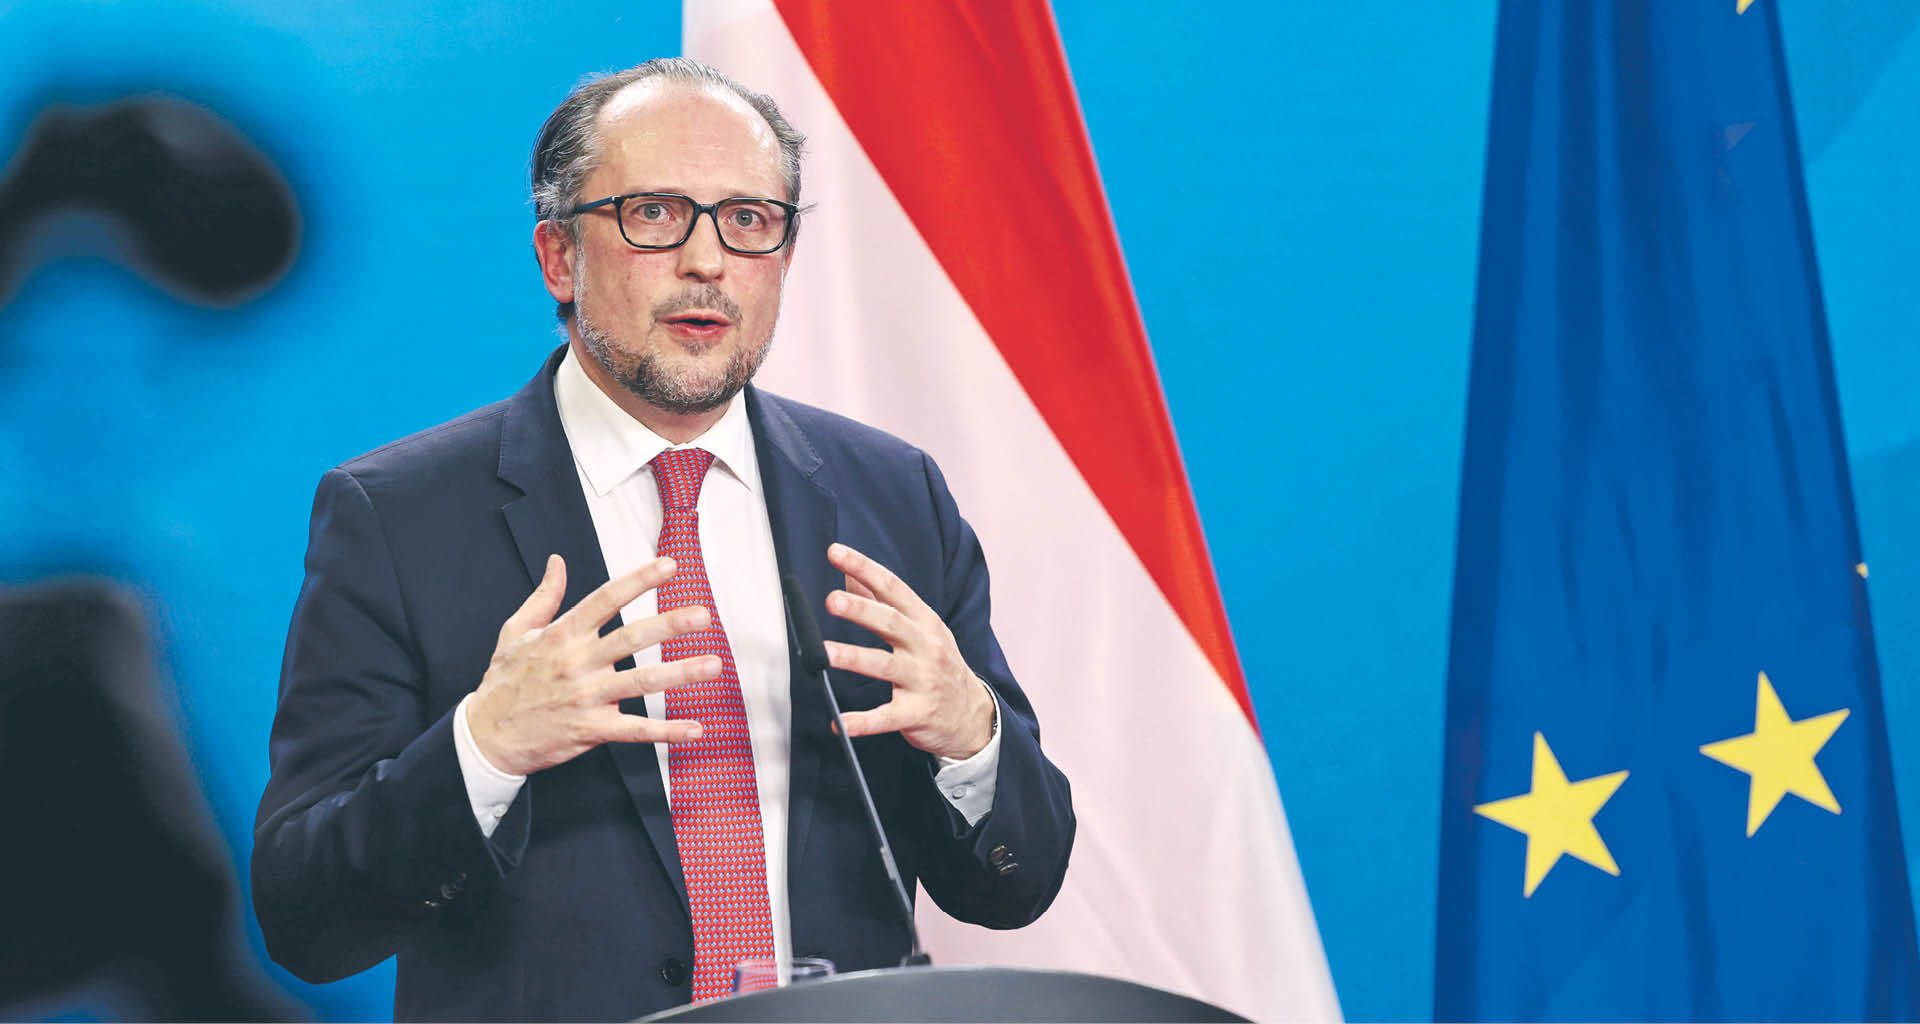 Data spotkania jest „bardzo niefortunna” - mówi szef austriackiej dyplomacji Alexander Schallenberg